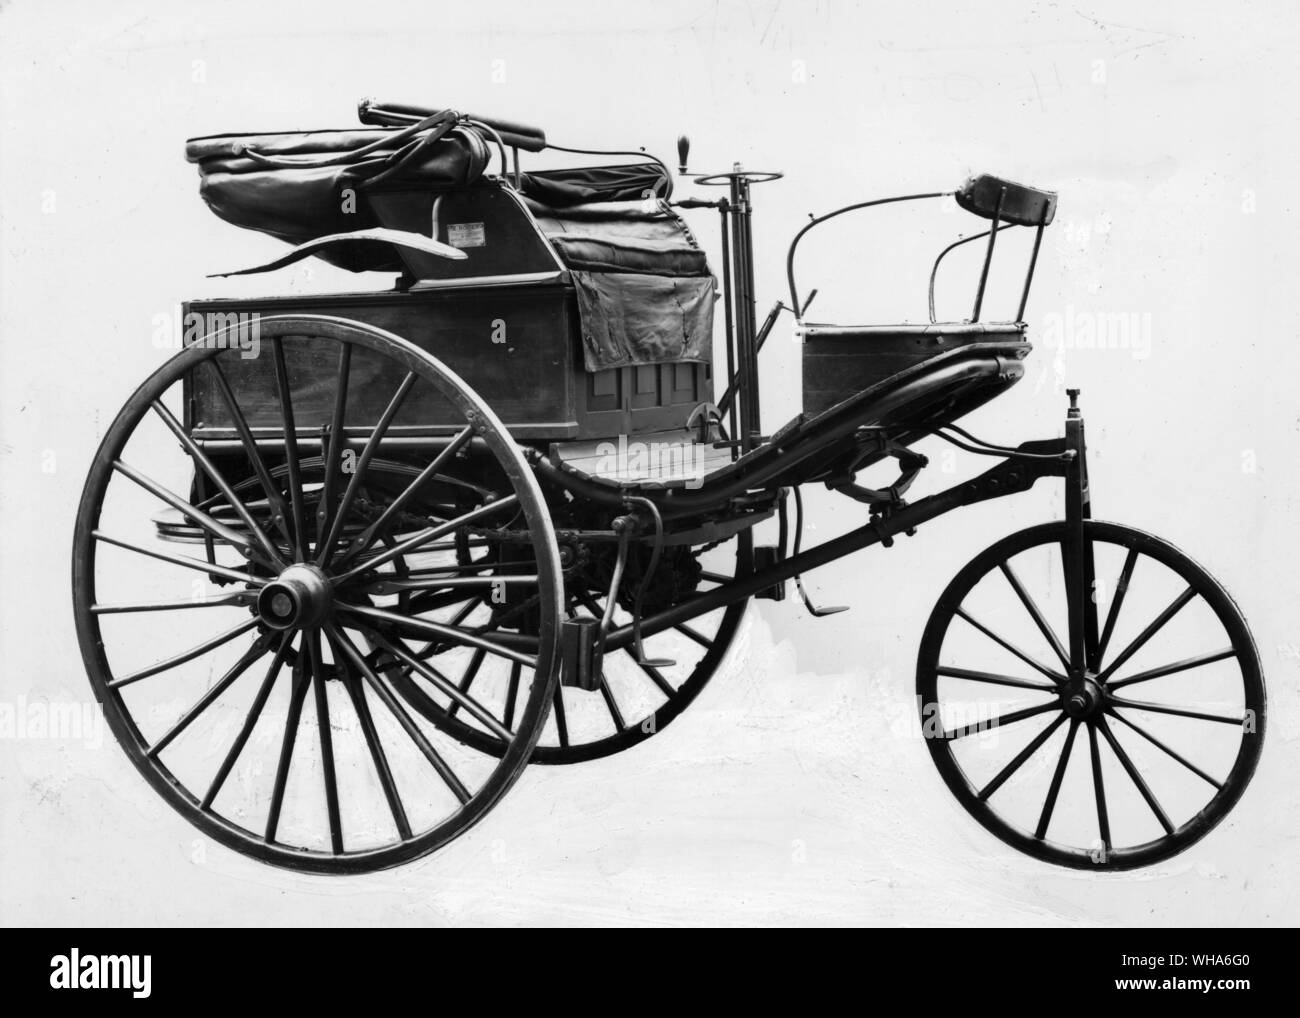 Benz Motor Car 1888. A tre ruote con un piano orizzontale di un unico cilindro motore progettato da Carl Benz. Questo esempio è probabilmente la prima auto a benzina portato in Inghilterra Foto Stock